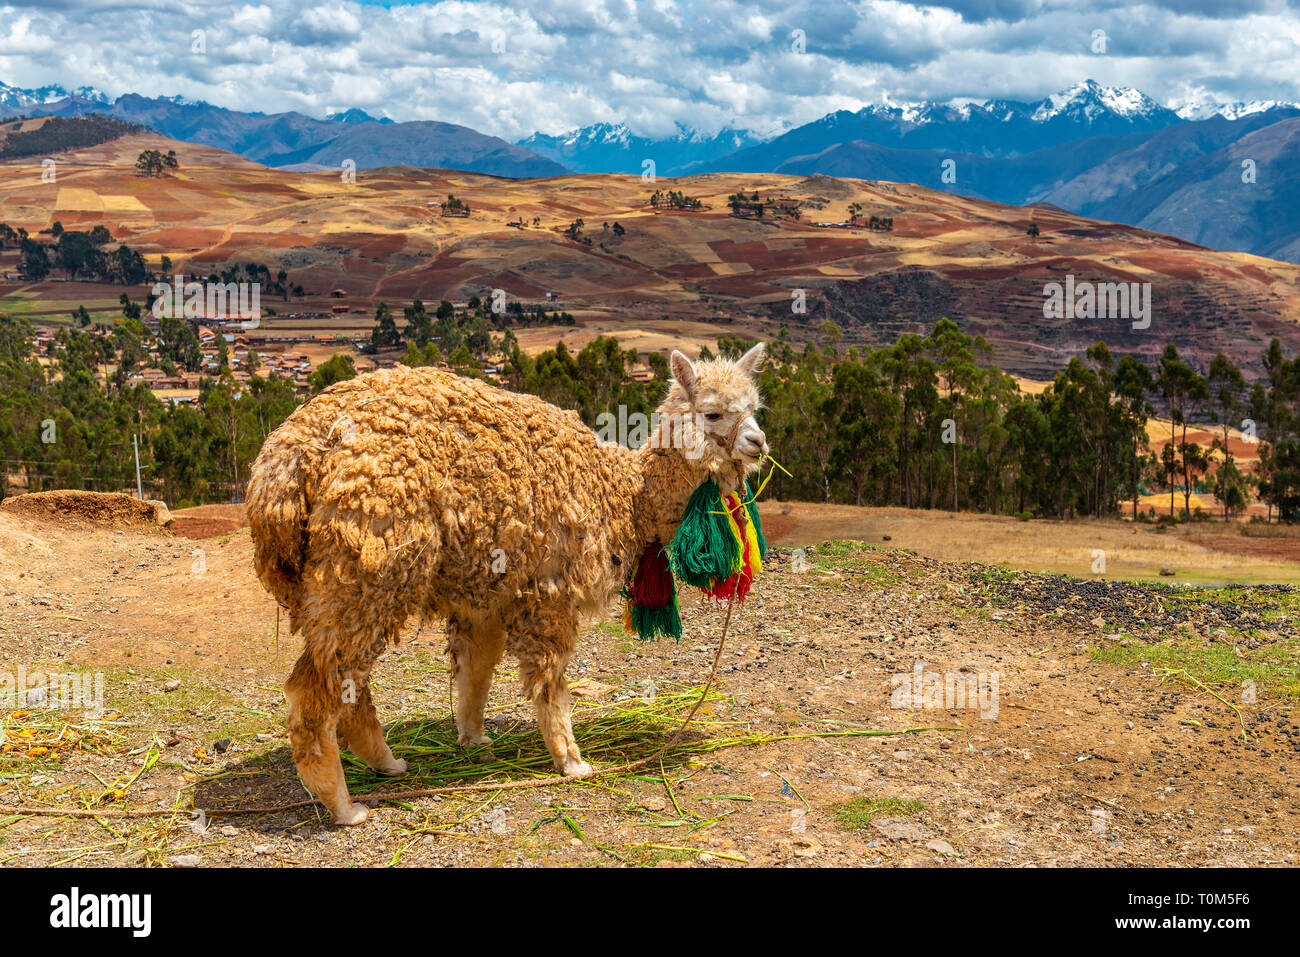 Portrait d'un lama (lama glama) dans la Vallée Sacrée des Incas avec la gamme de montagne des Andes dans l'arrière-plan, la province de Cusco, Pérou. Banque D'Images